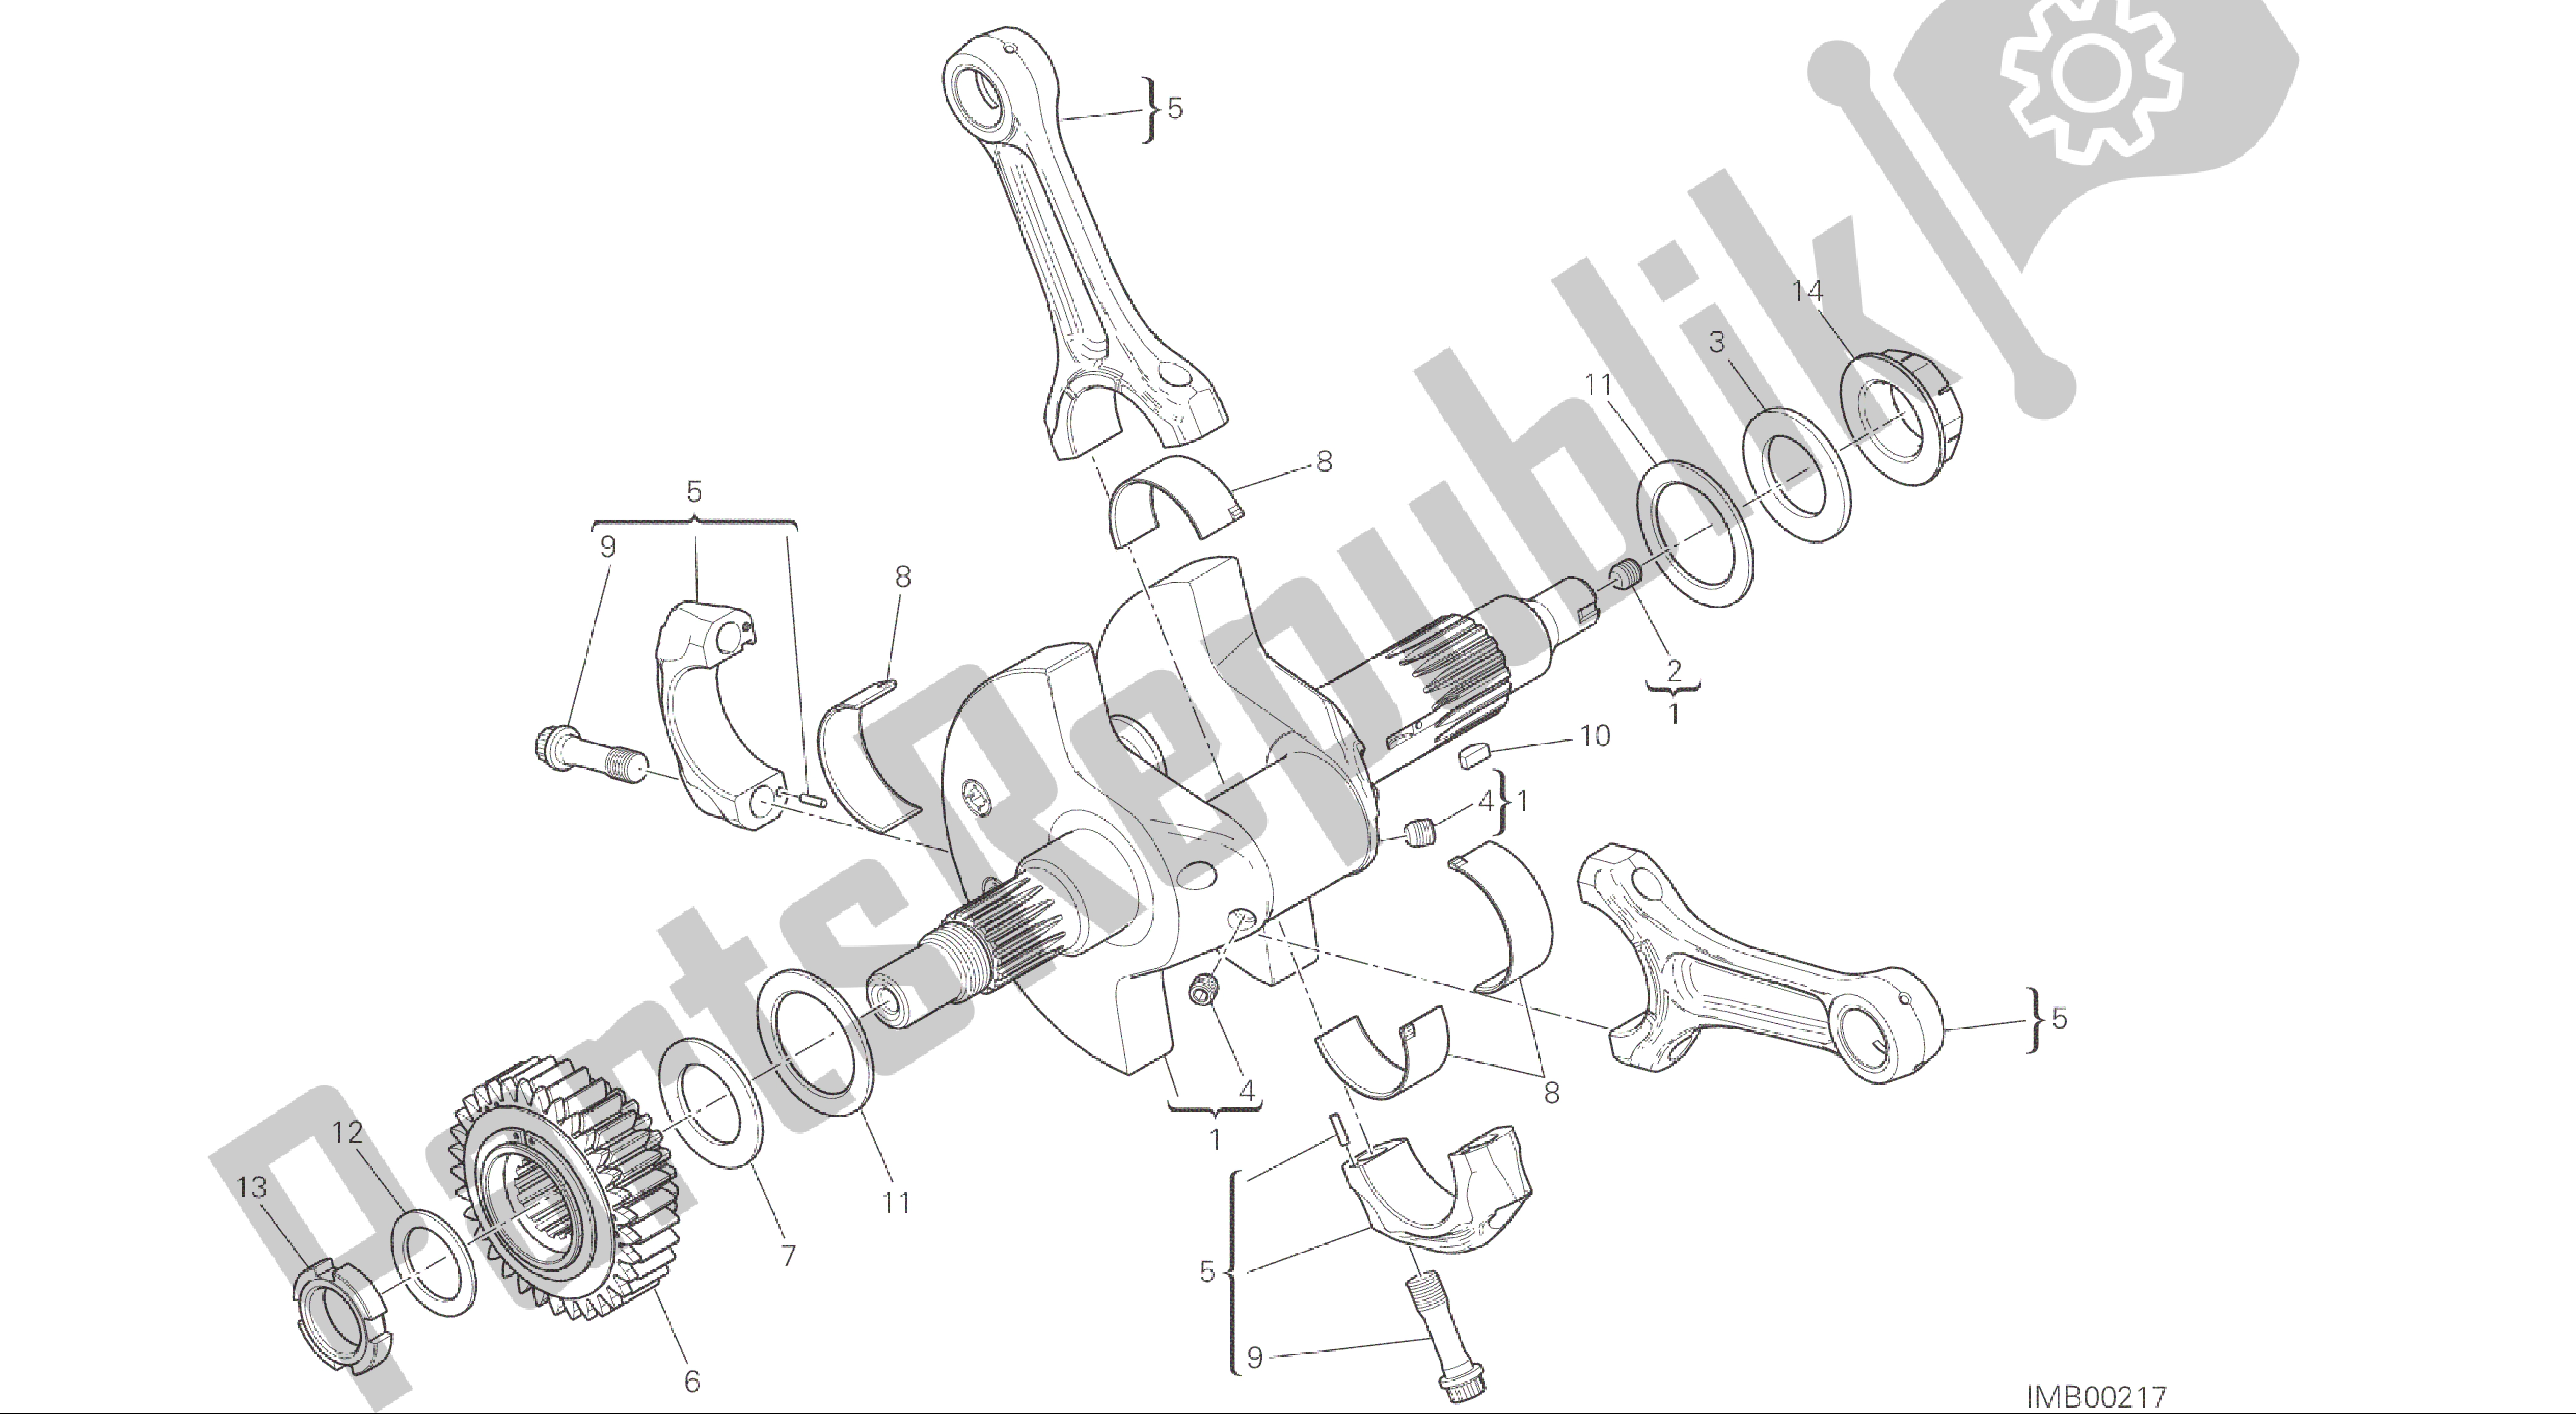 Tutte le parti per il Disegno 006 - Bielle [mod: Ms1200; Xst: Aus, Eur, Fra, Jap] Gruppo Motore del Ducati Multistrada 1200 2015